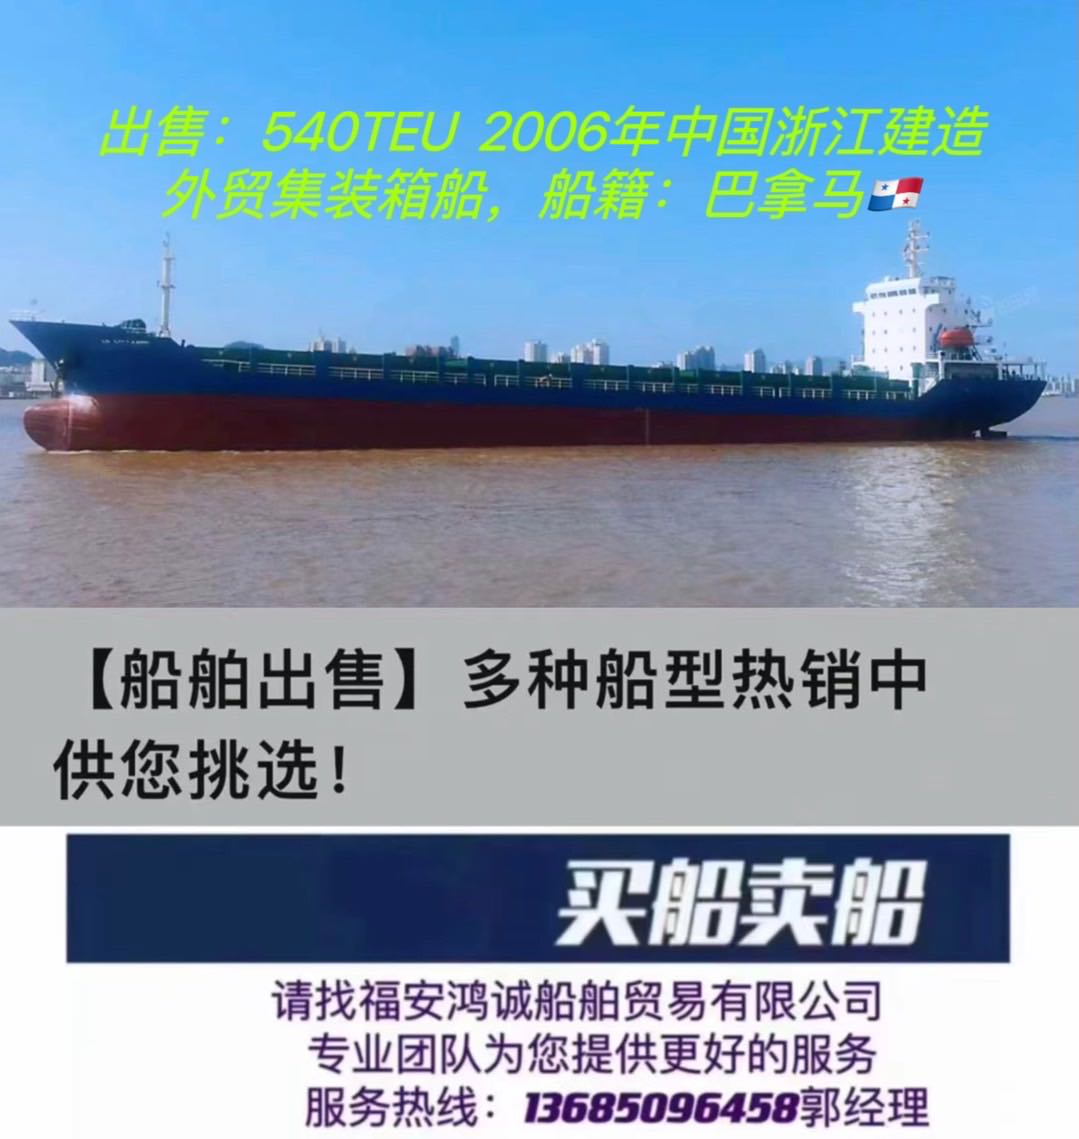 出售：8300吨外贸集装箱船  装载：540TEU 建造年月：2006年   建造地：中国浙江 船籍：巴拿马 航区：无限航区    船级社：ICS